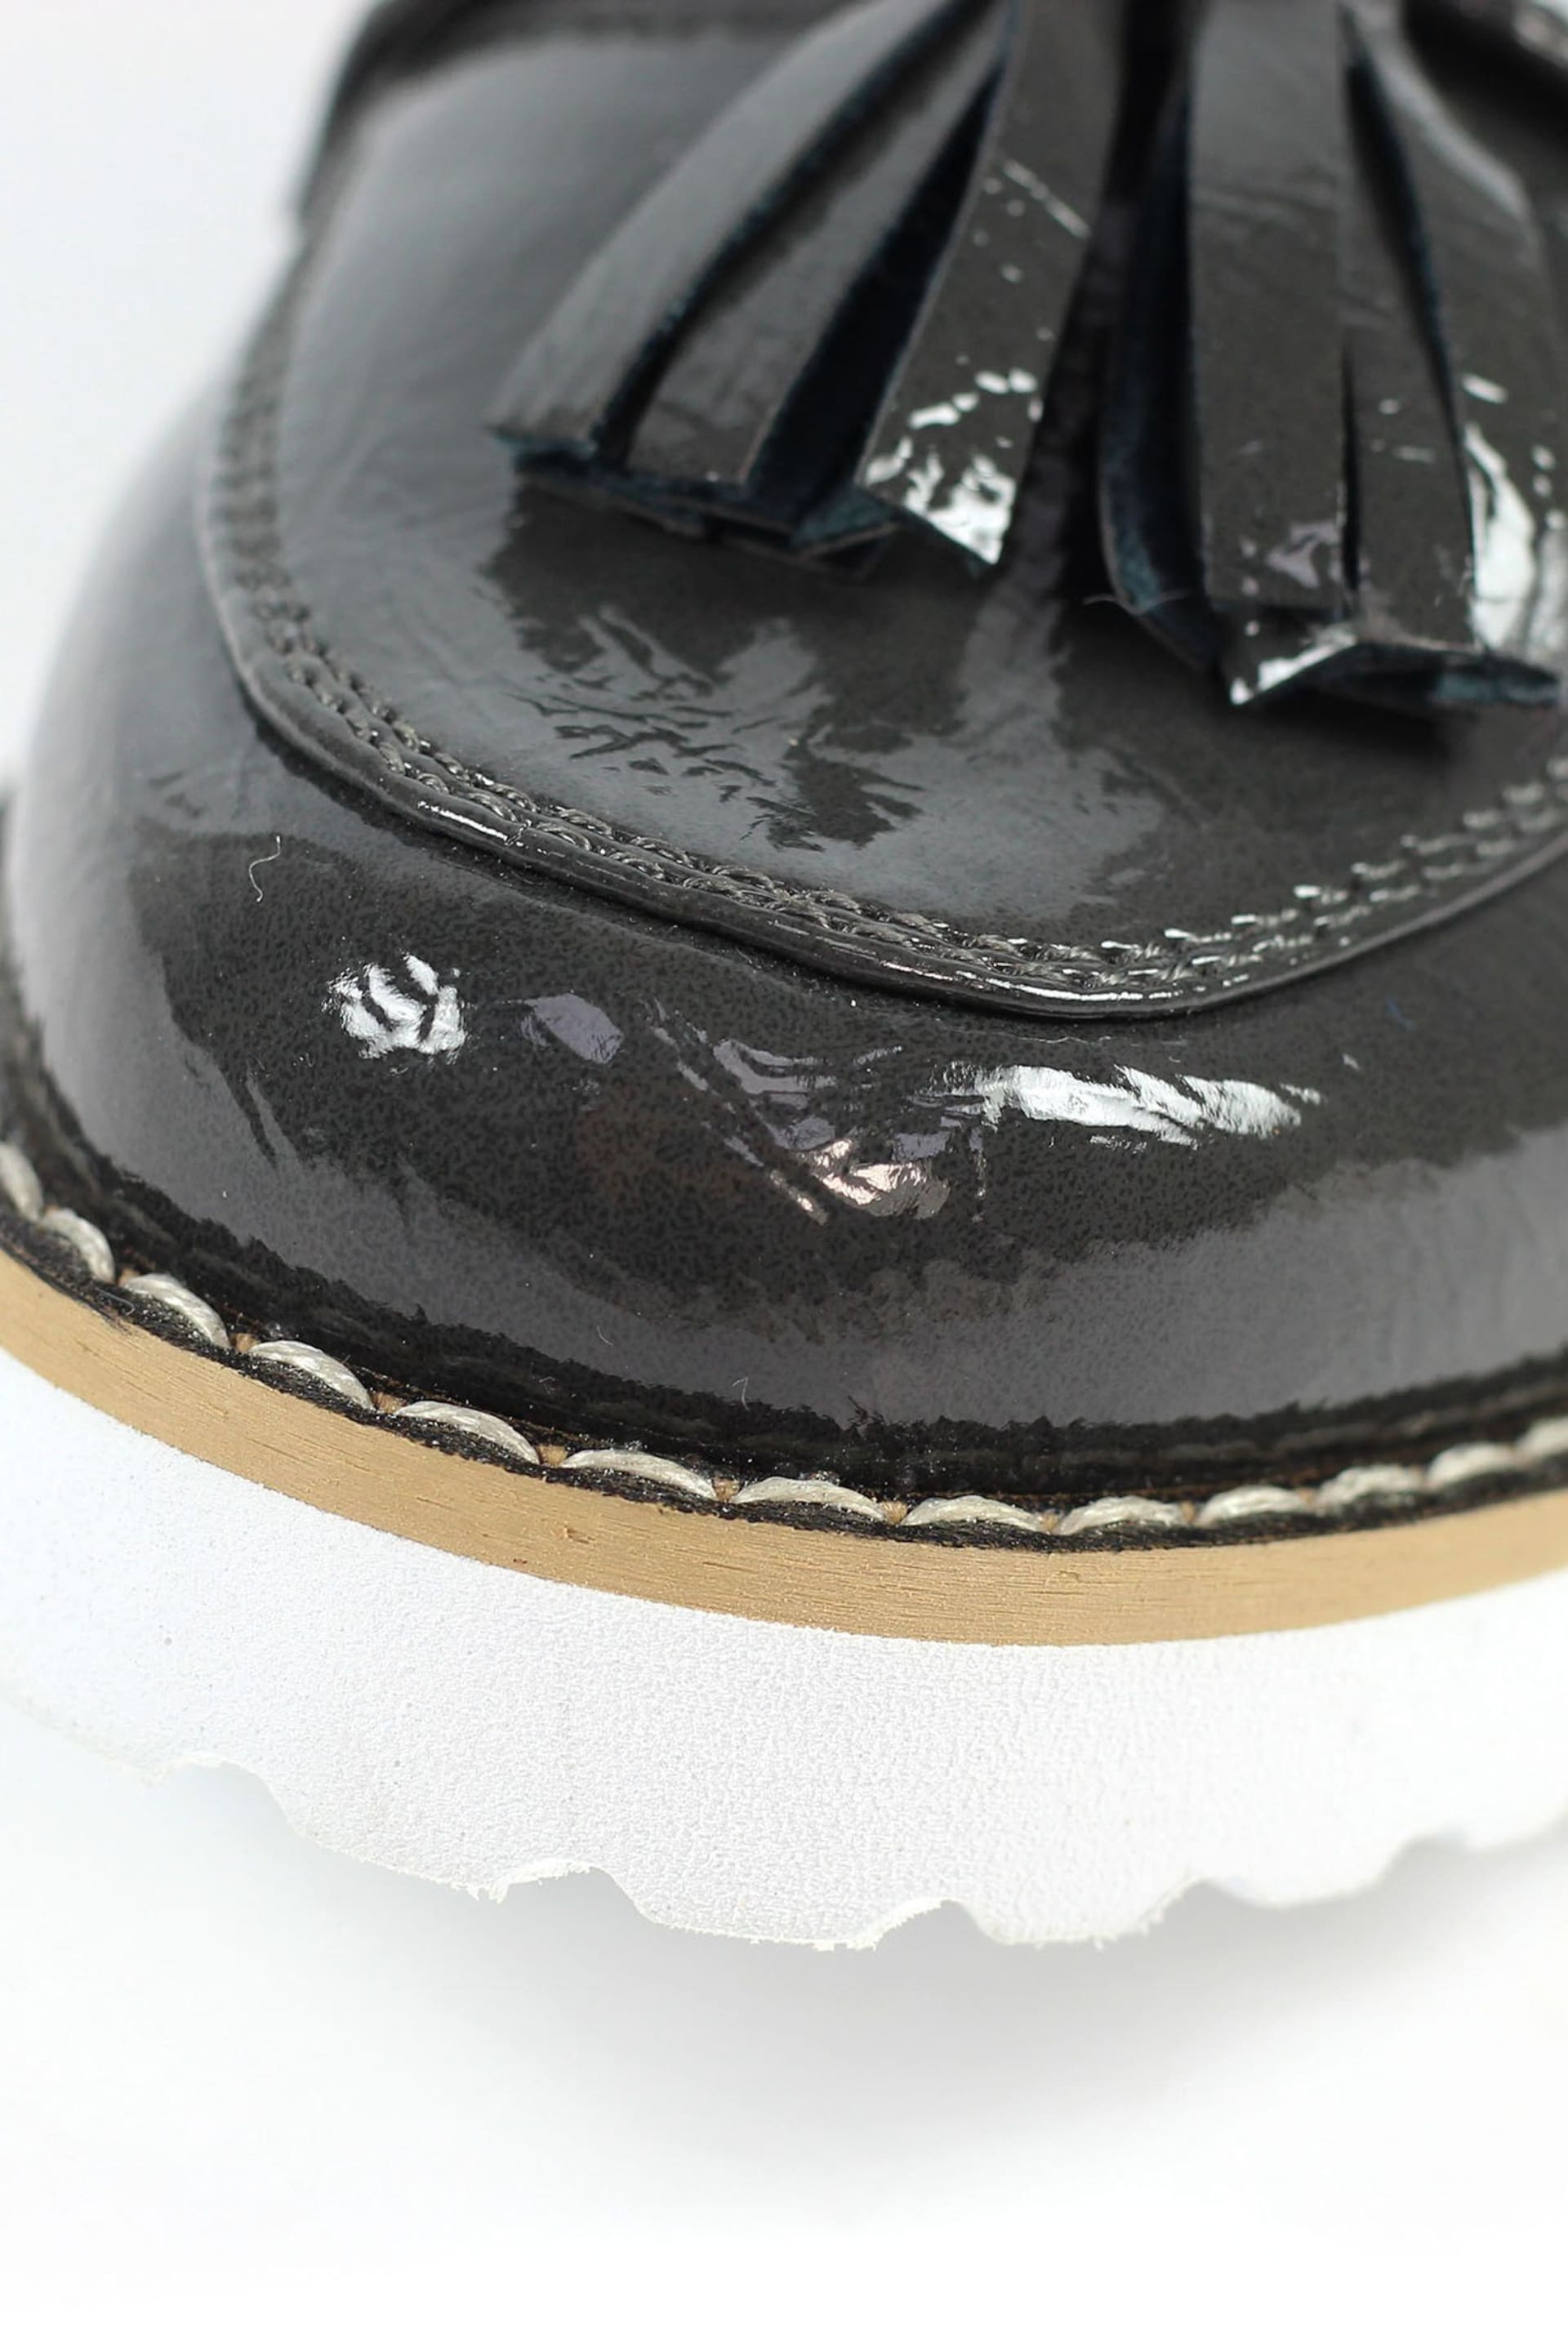 Lunar Granger Grey Shoes - Image 8 of 8